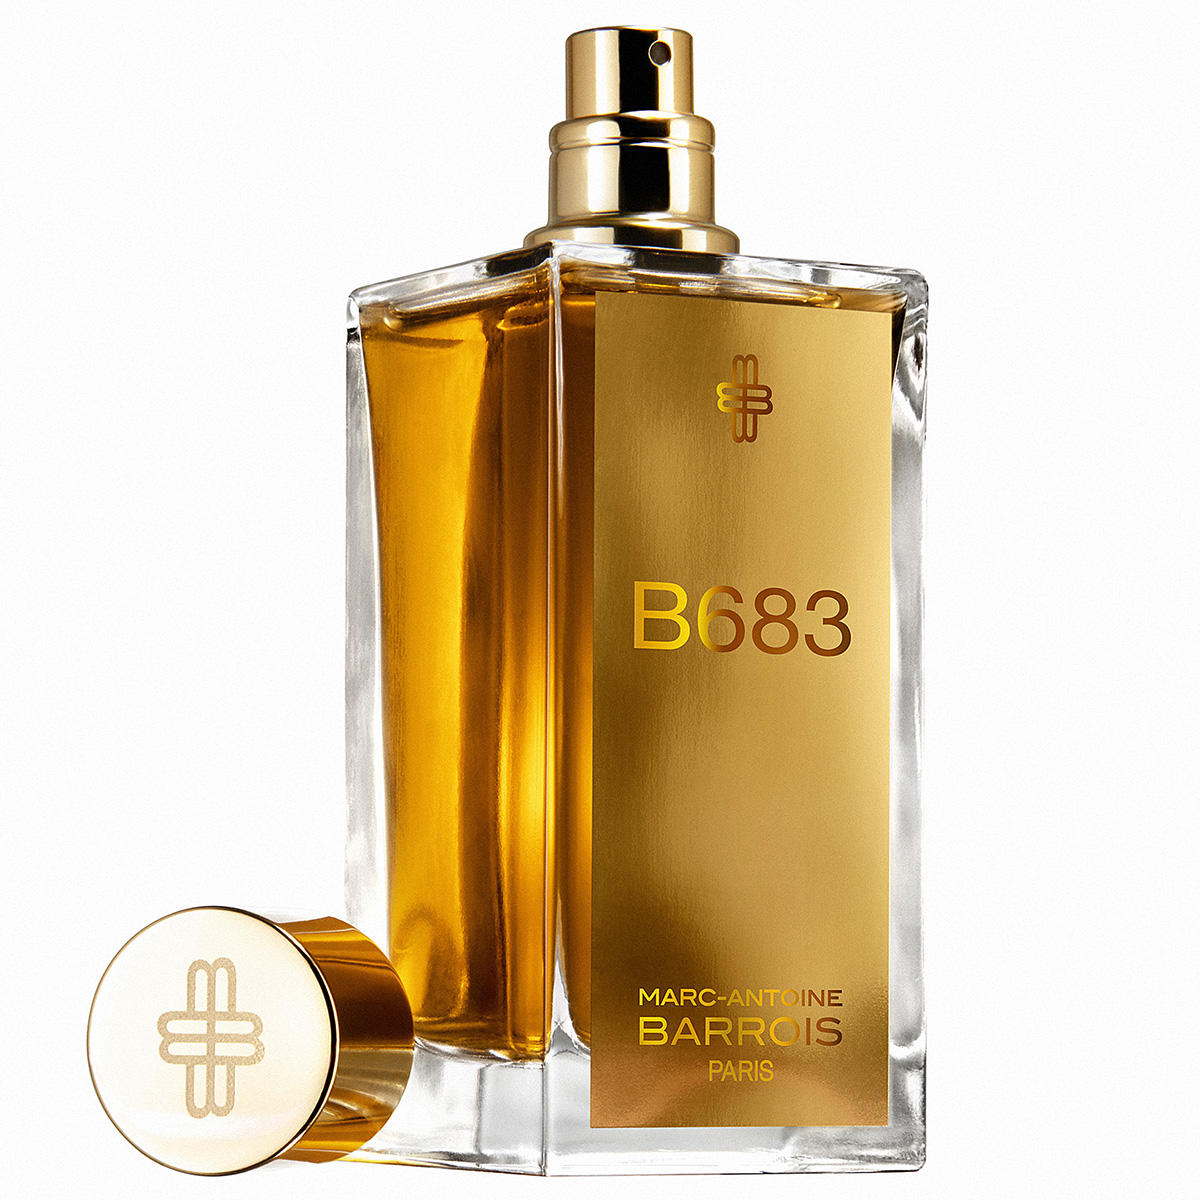 Marc-Antoine Barrois B683 Eau de Parfum 100 ml - 2